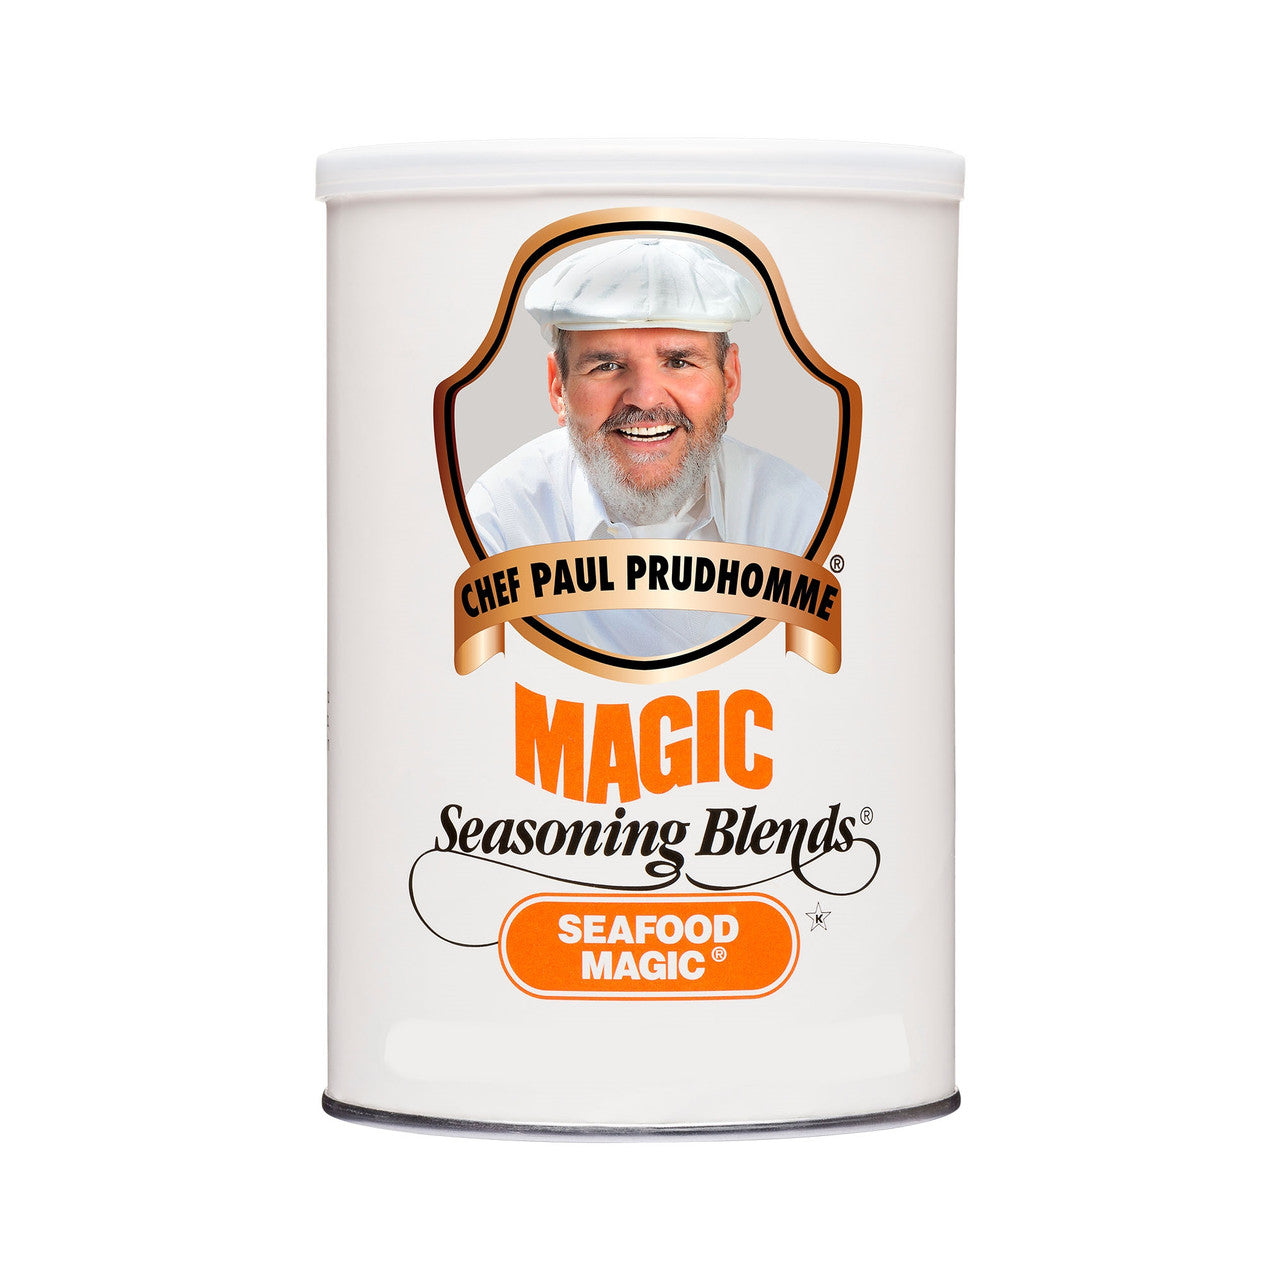 Chef Paul Prudhomme's Magic Seasoning Blends, Seafood Seasoning